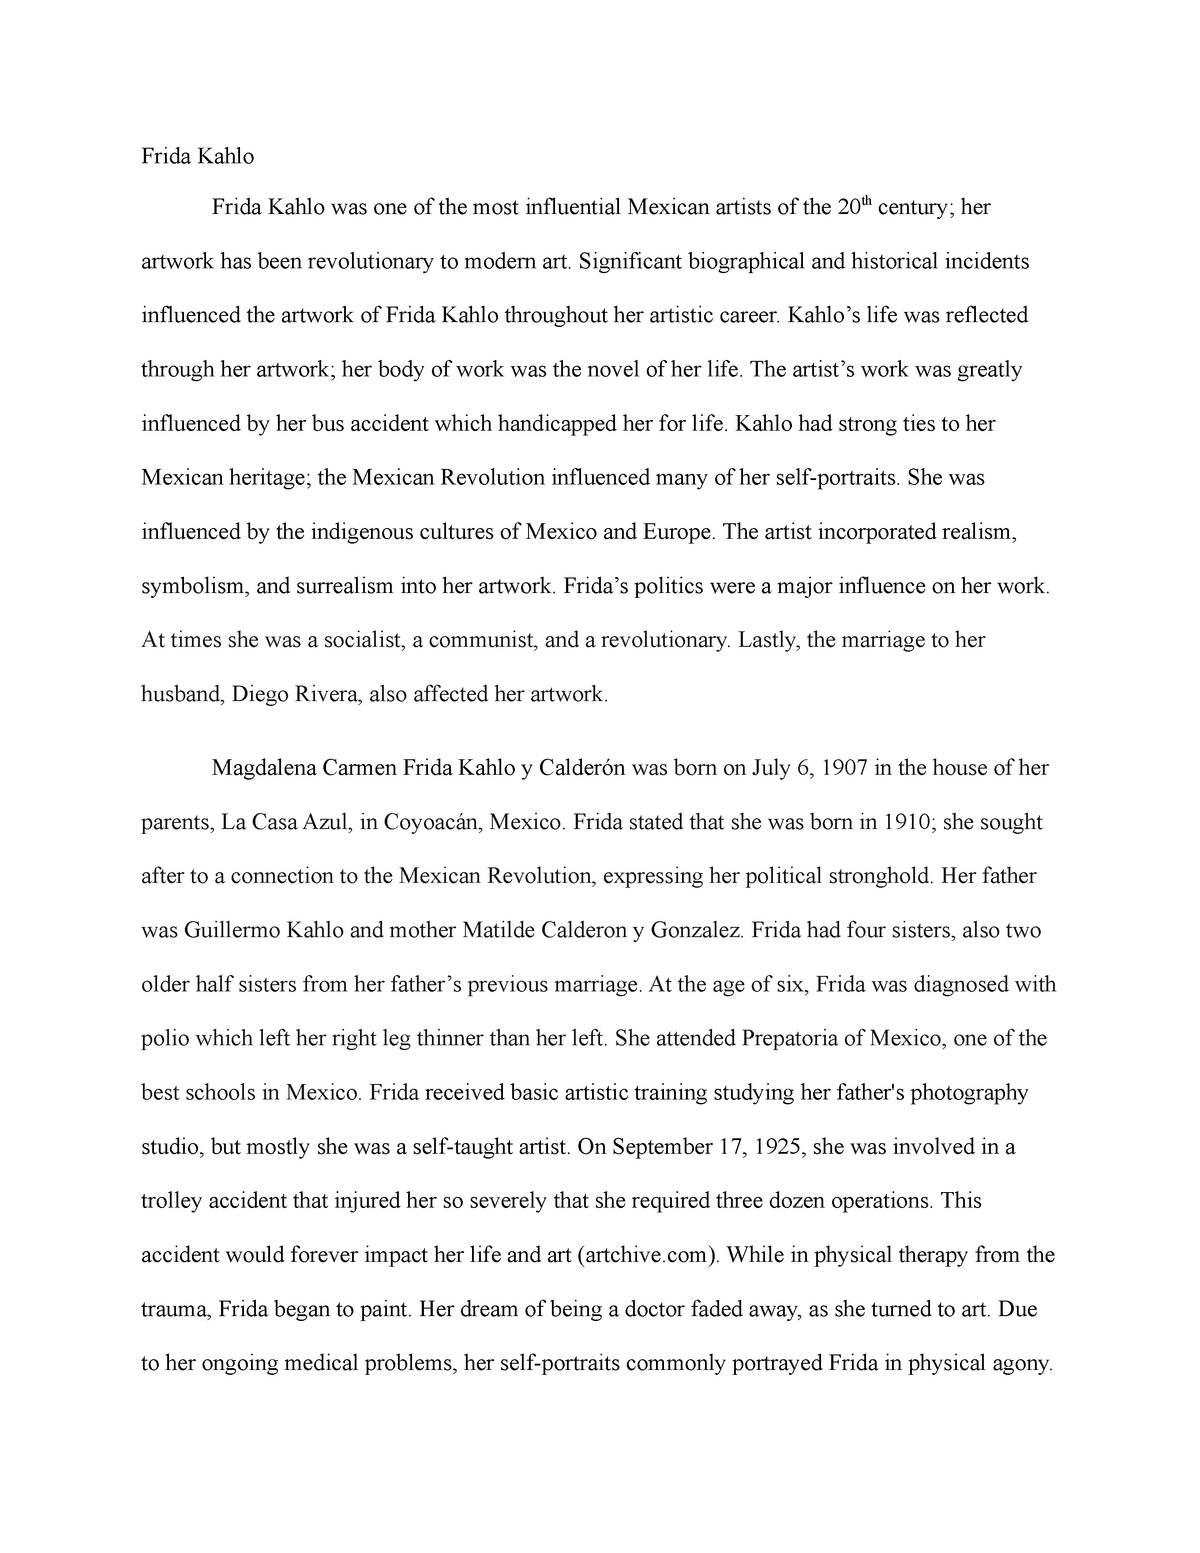 essays on frida kahlo